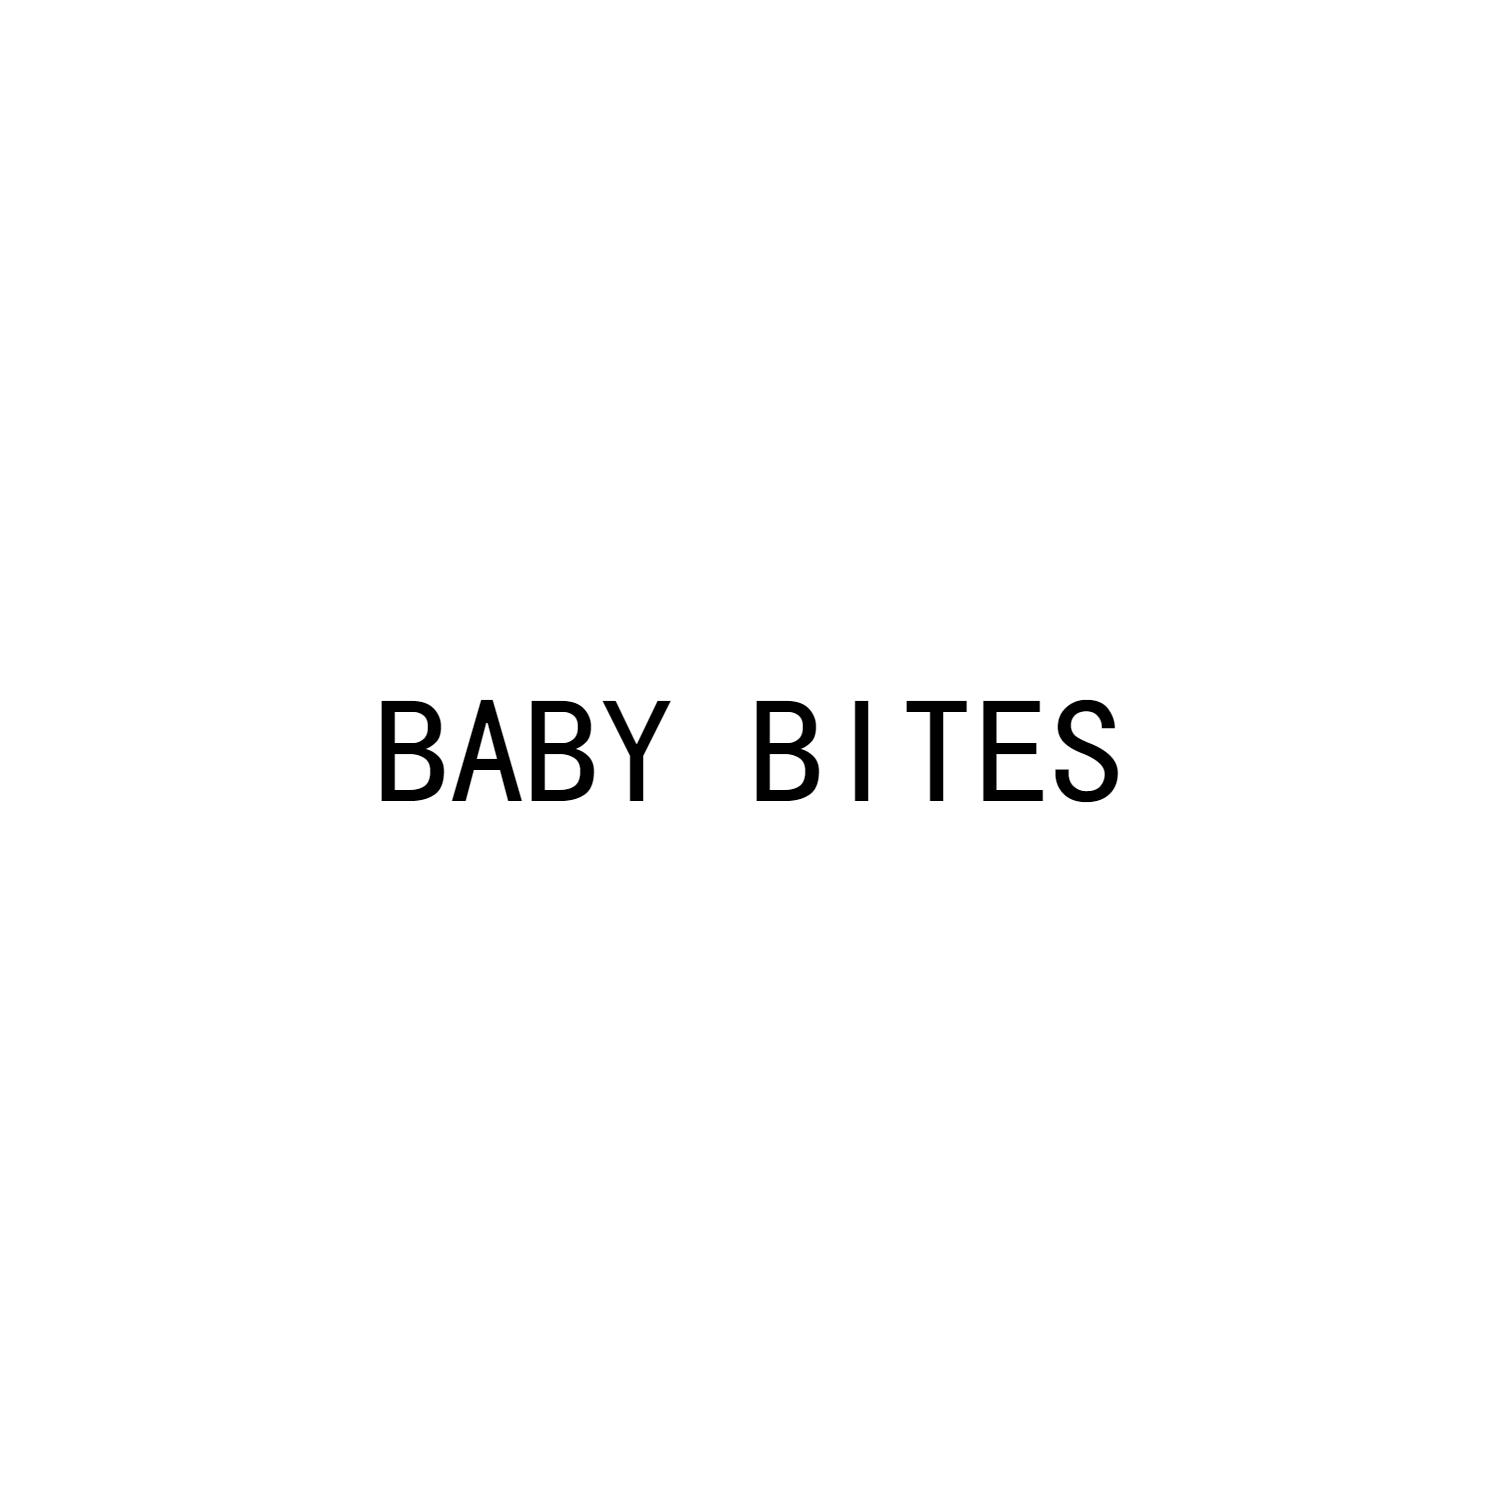 BABY BITES